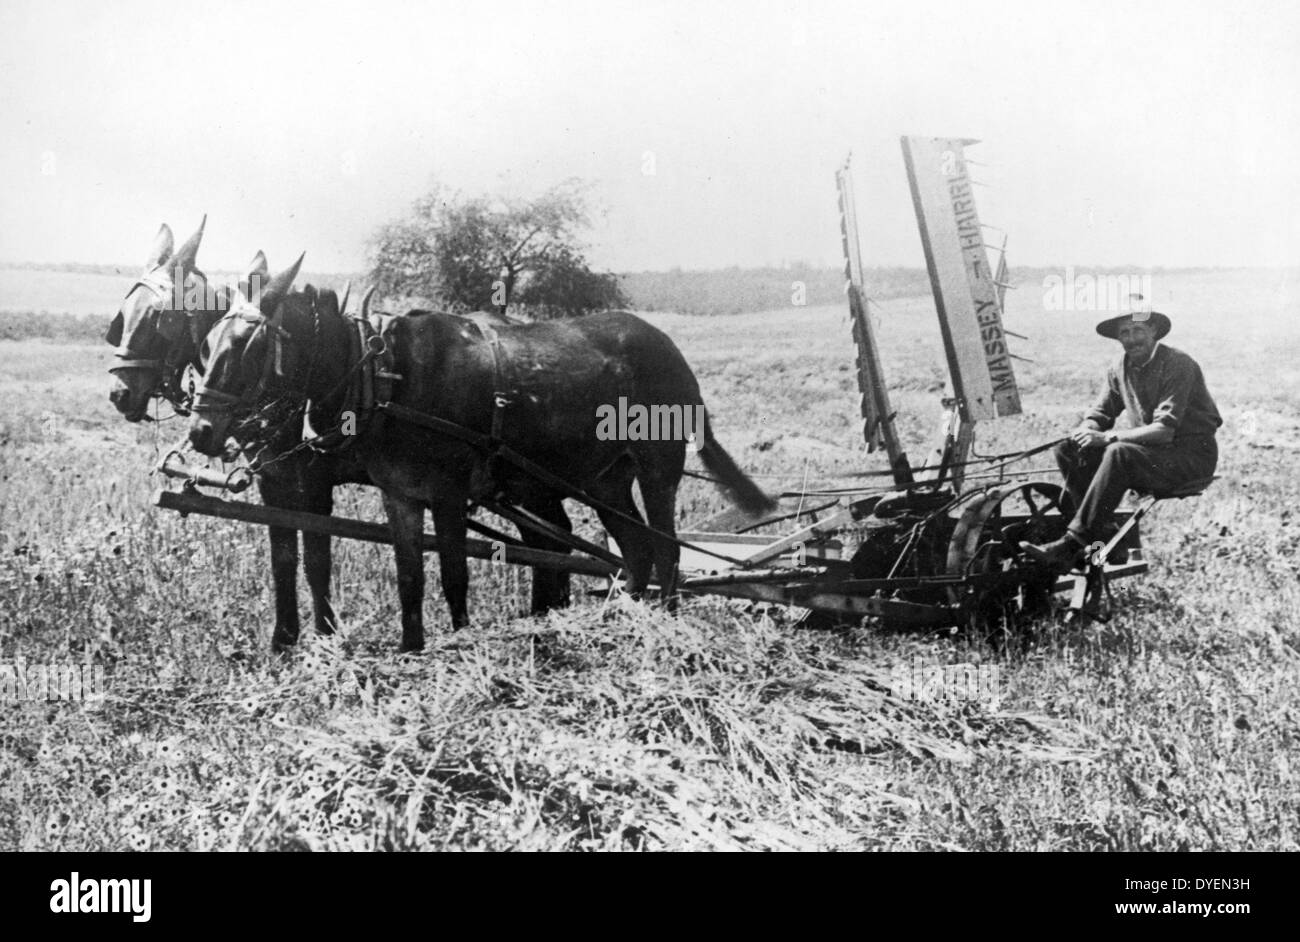 Palestina (Israele) un agricoltore ebraica arando un campo. [Tra il 1900 e il 1922] agricoltore seduto su un Massey-Harris macchina rasaerba trainato da due cavalli. Foto Stock